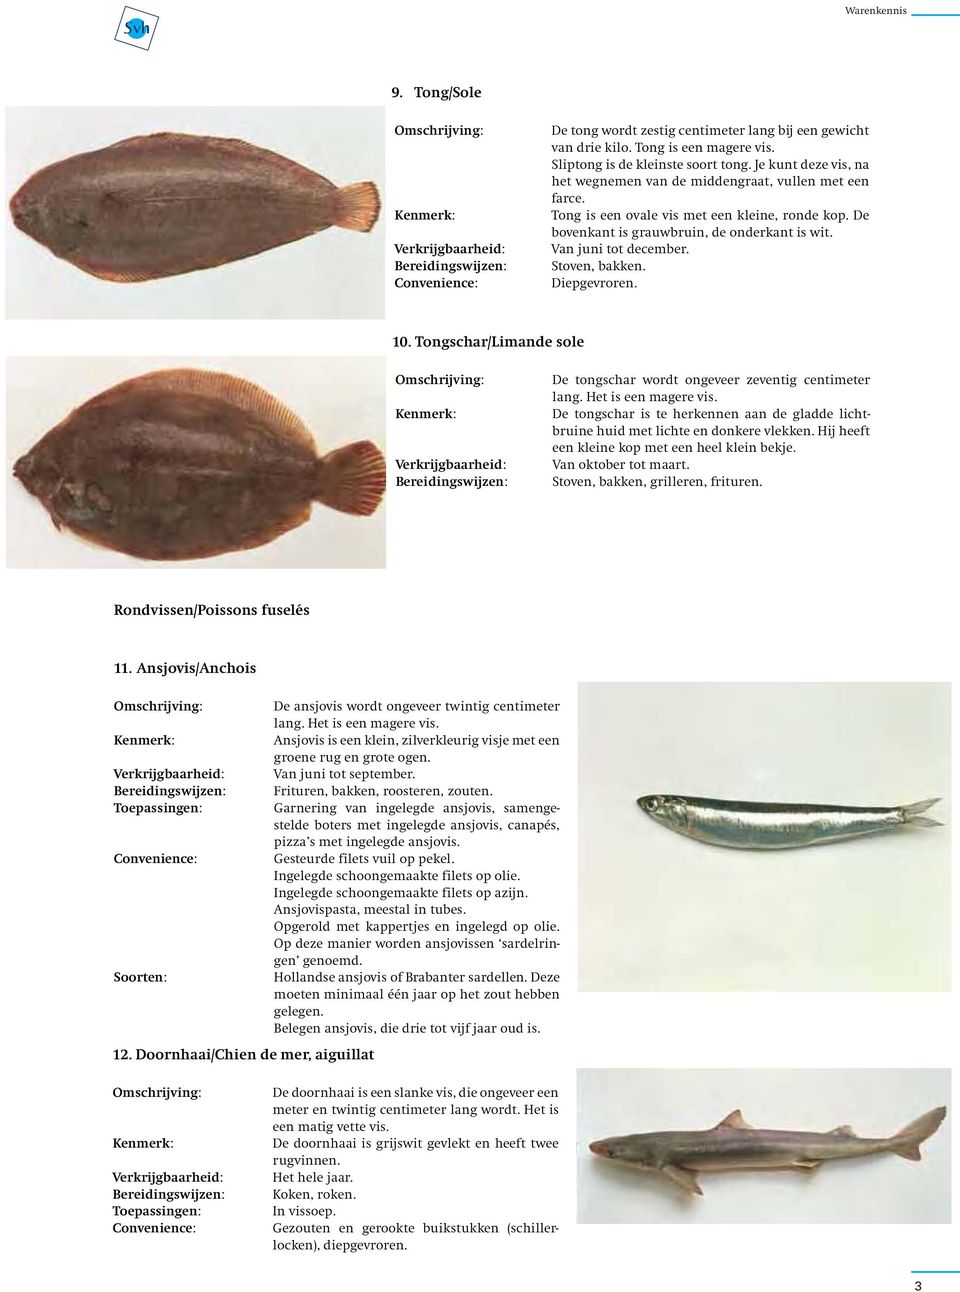 Stoven, bakken. 10. Tongschar/Limande sole De tongschar wordt ongeveer zeventig centimeter lang. Het is een magere vis.